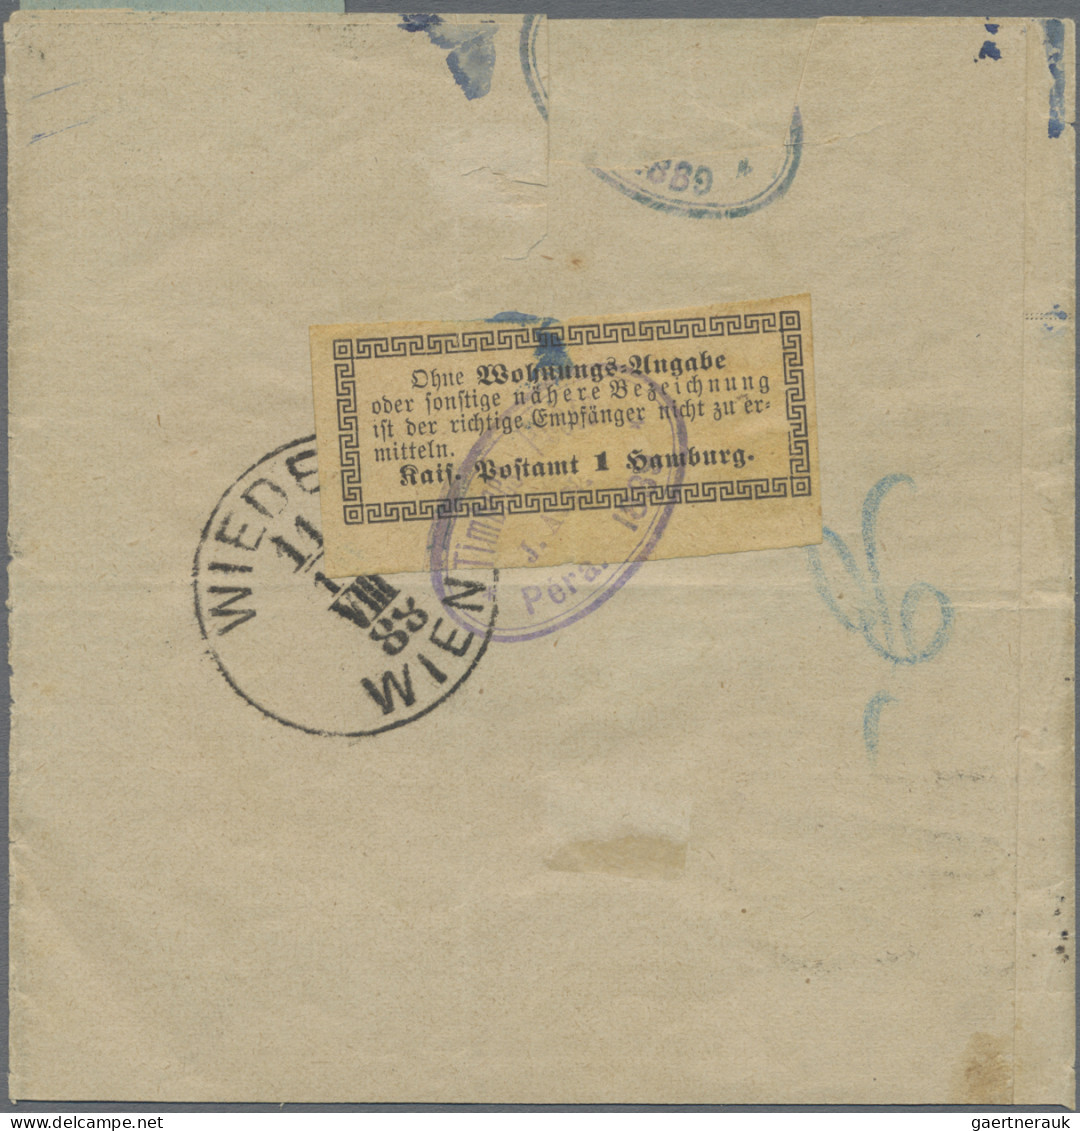 Deutsche Post In Der Türkei: 1888, Freimarke Mit Aufdruck 10 PA Auf 5 Pf Violett - Turkse Rijk (kantoren)